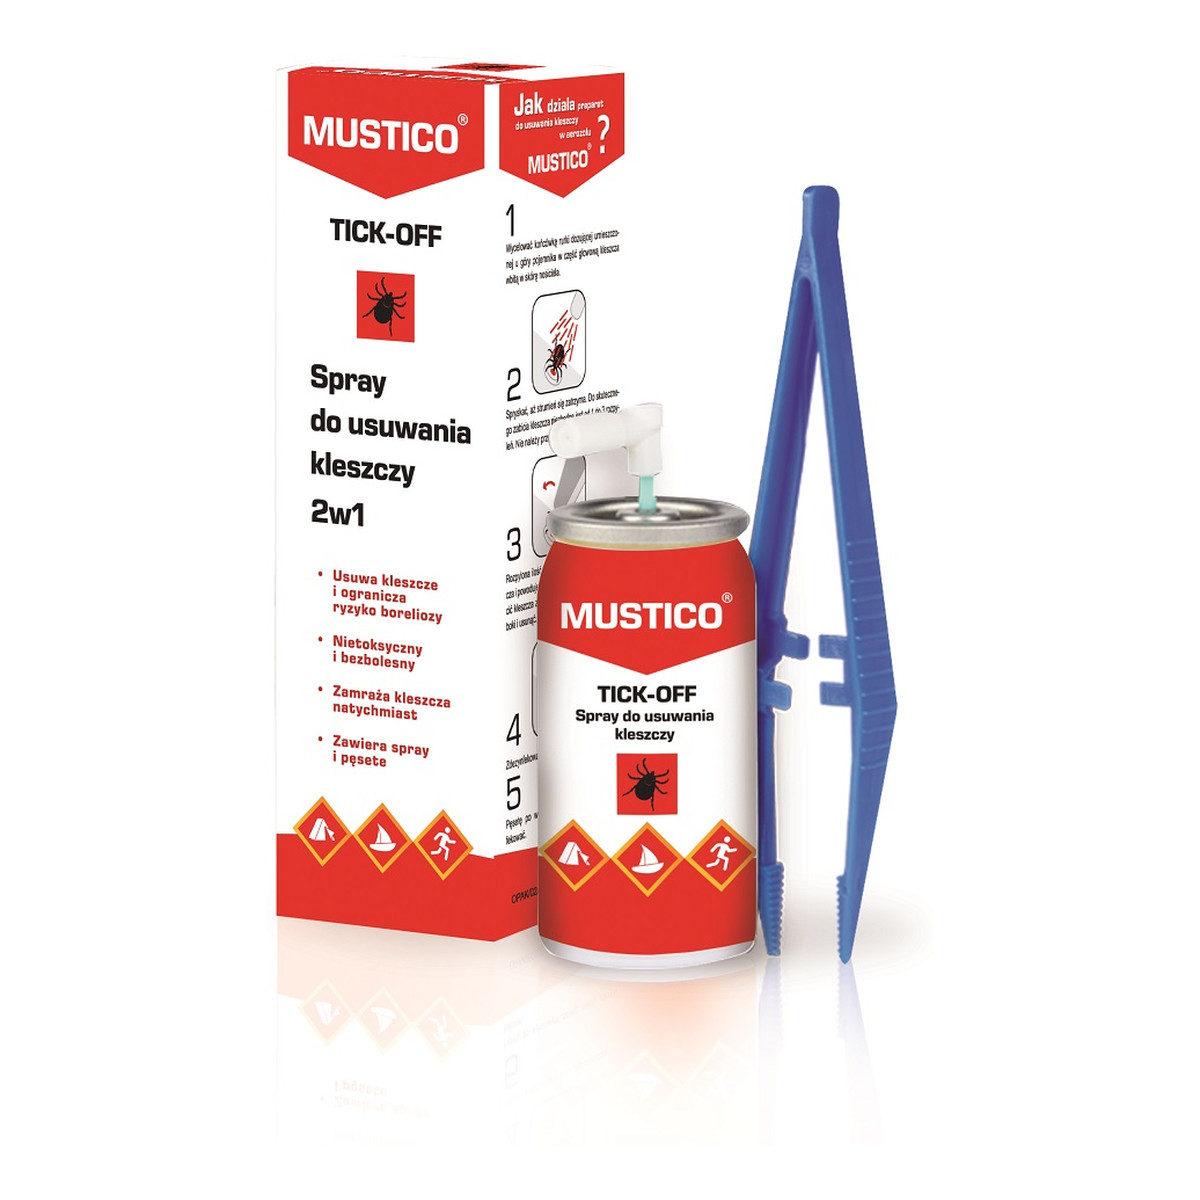 Mustico Tick-Off spray do bezpiecznego usuwania kleszczy 2w1 11g